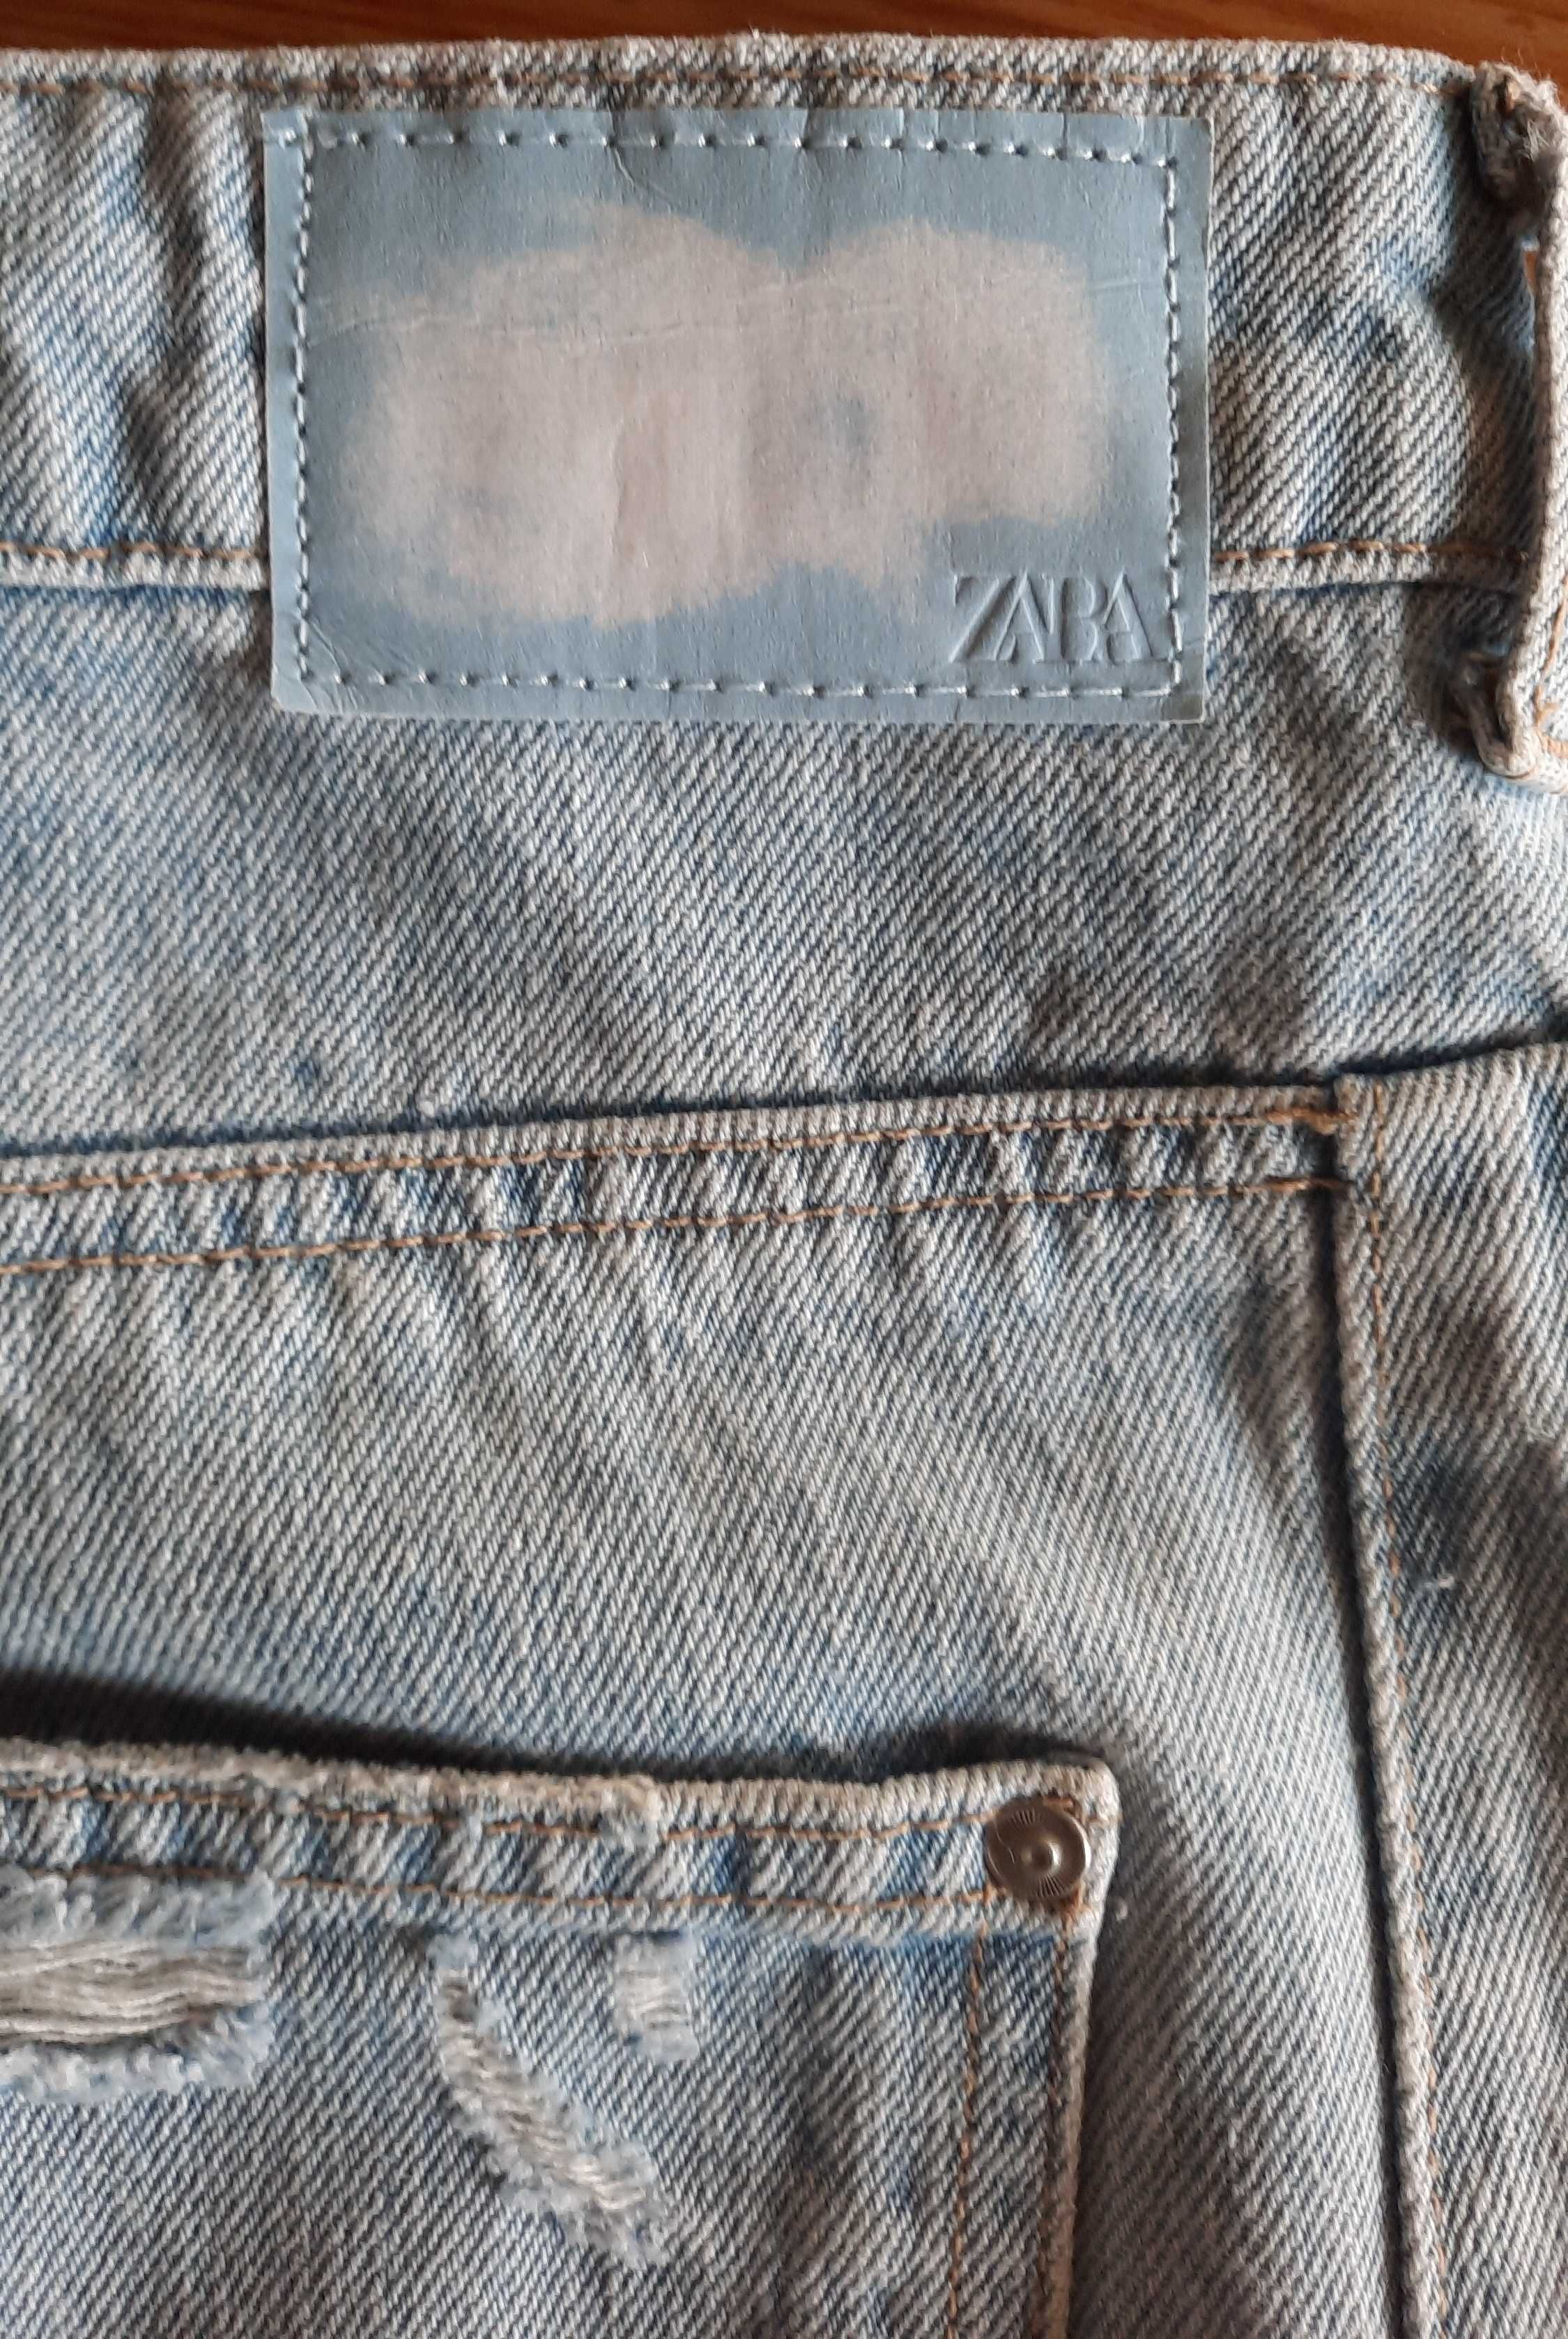 Zara - spodnie jeansowe  44